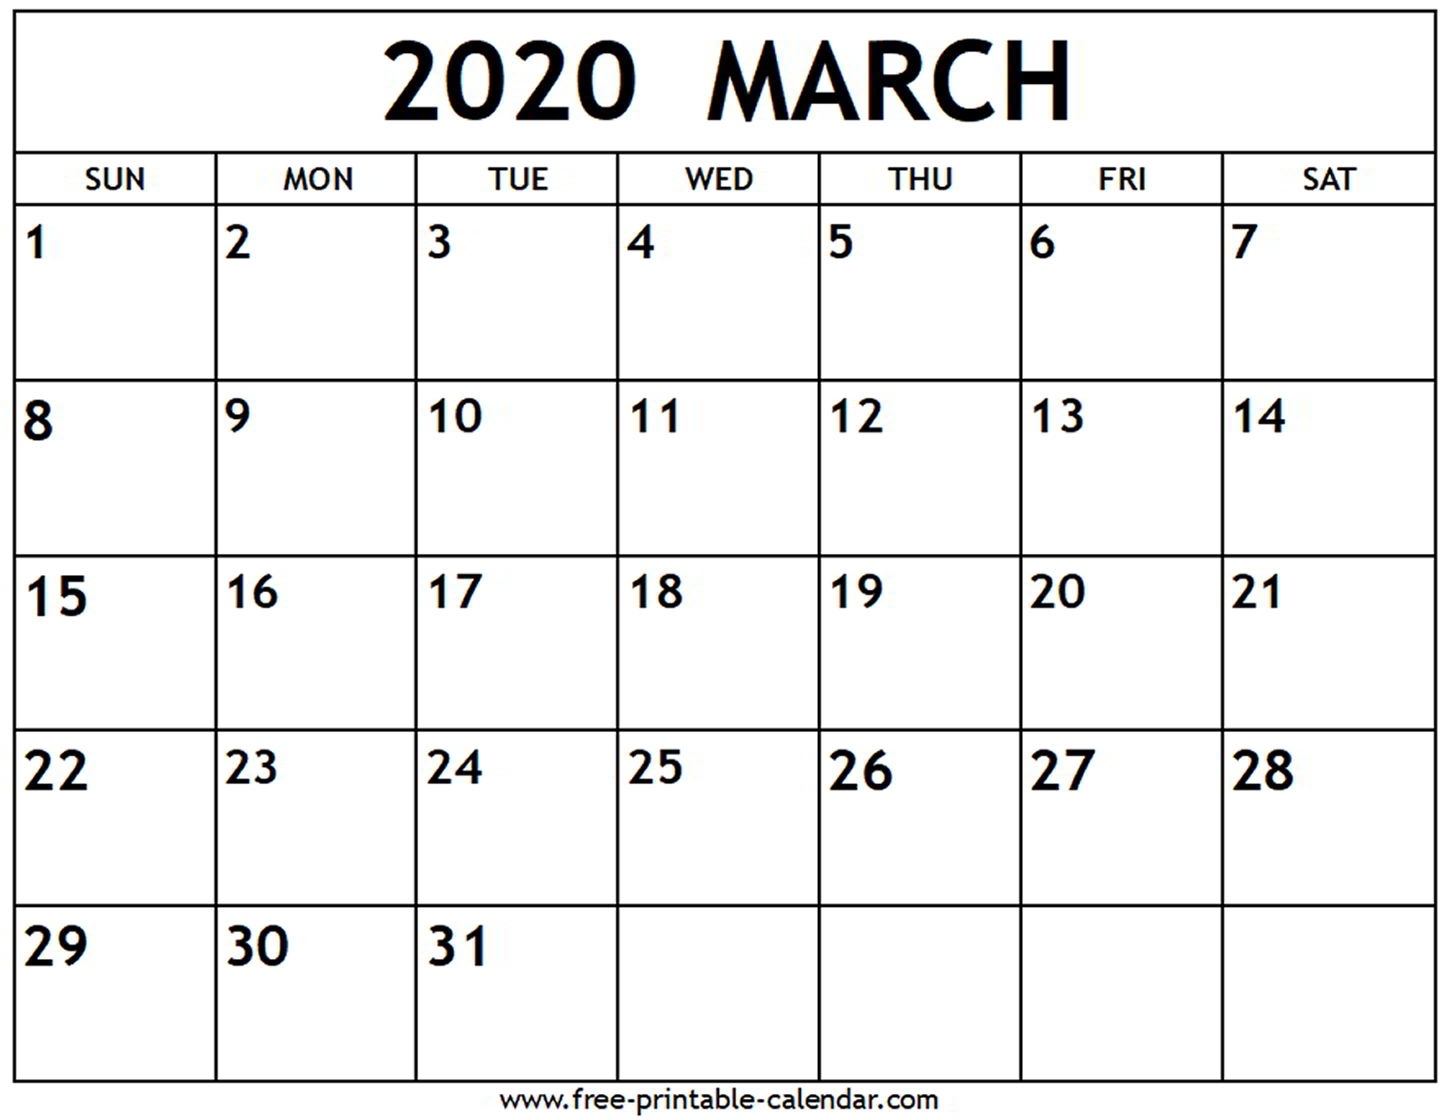 March 2020 Calendar - Free-Printable-Calendar March 2020 Calendar Canada Printable